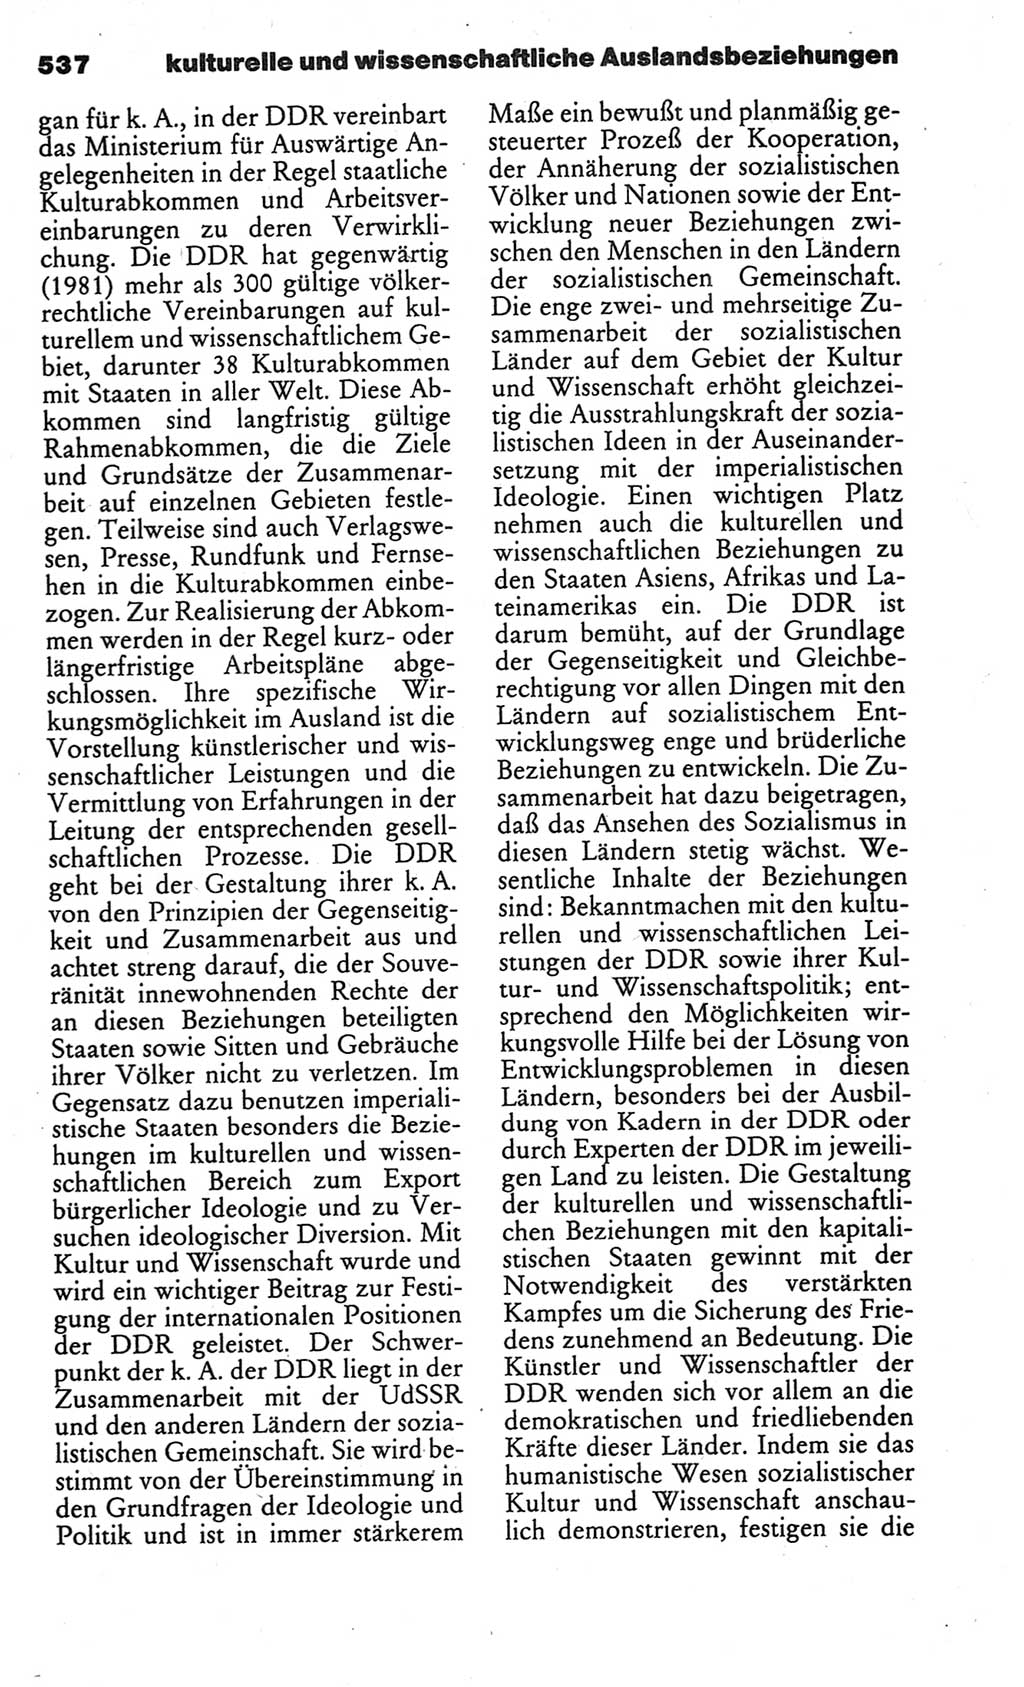 Kleines politisches Wörterbuch [Deutsche Demokratische Republik (DDR)] 1986, Seite 537 (Kl. pol. Wb. DDR 1986, S. 537)